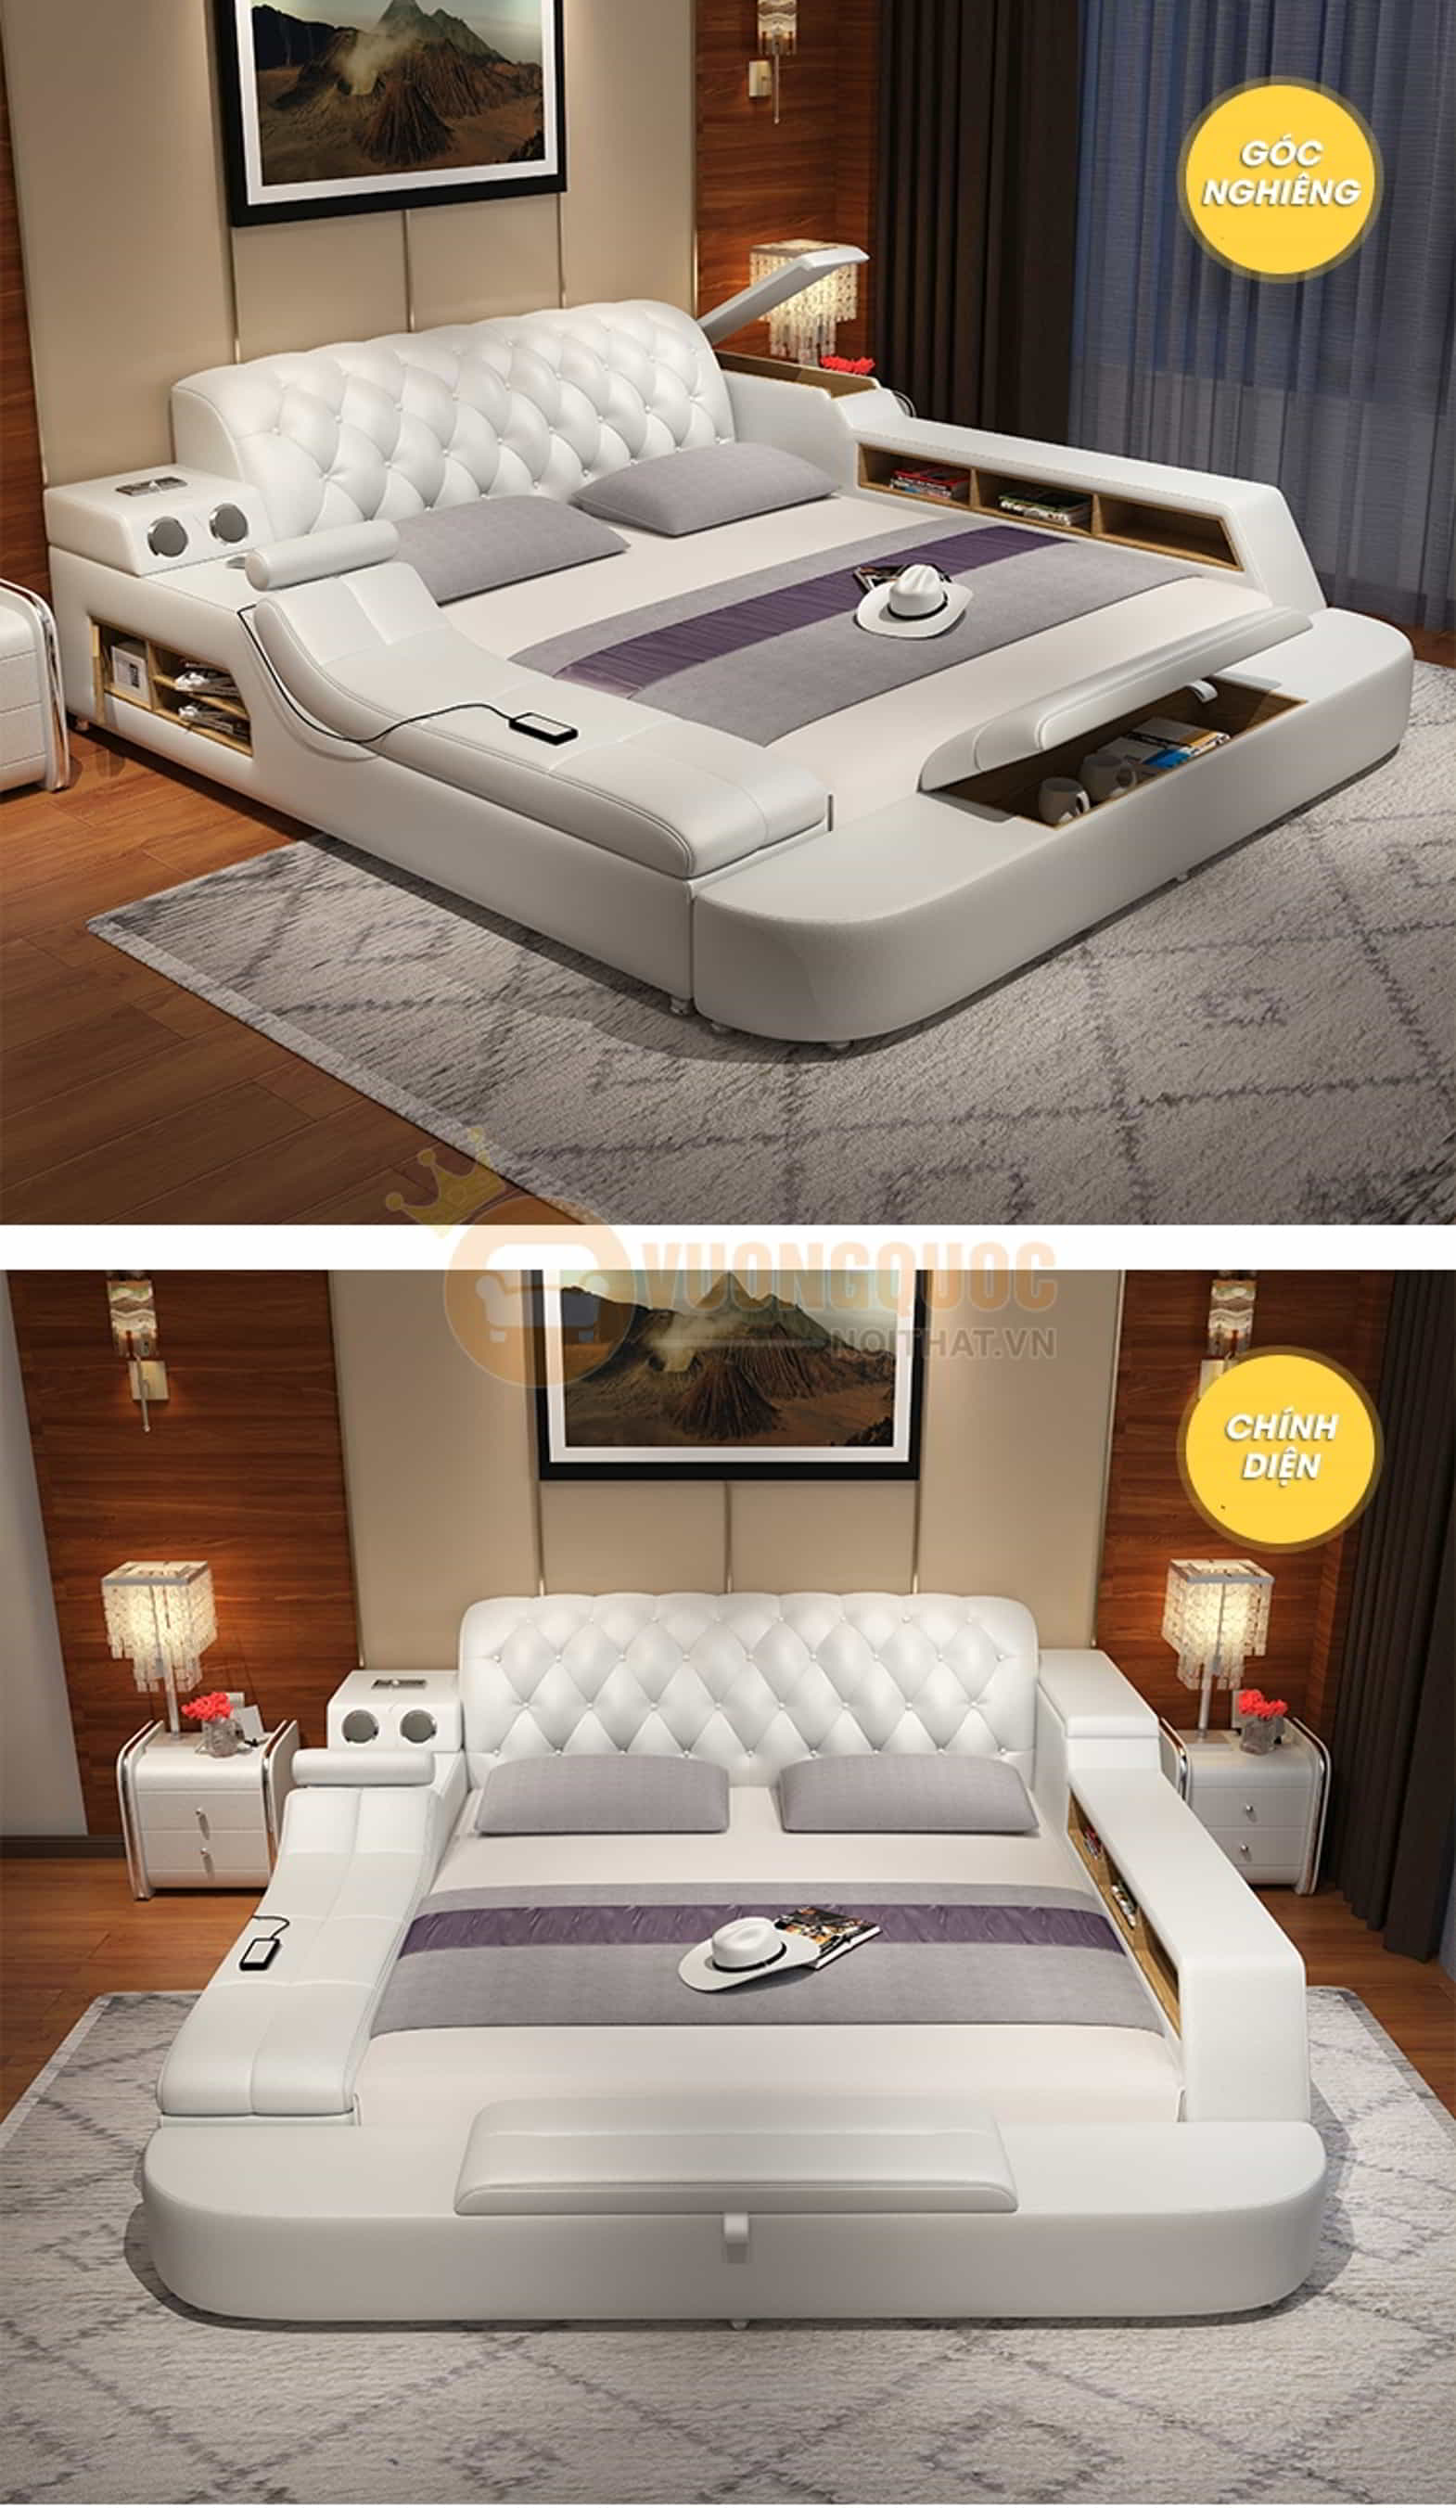 Giường ngủ gỗ tự nhiên hiện đại thiết kế đa năng